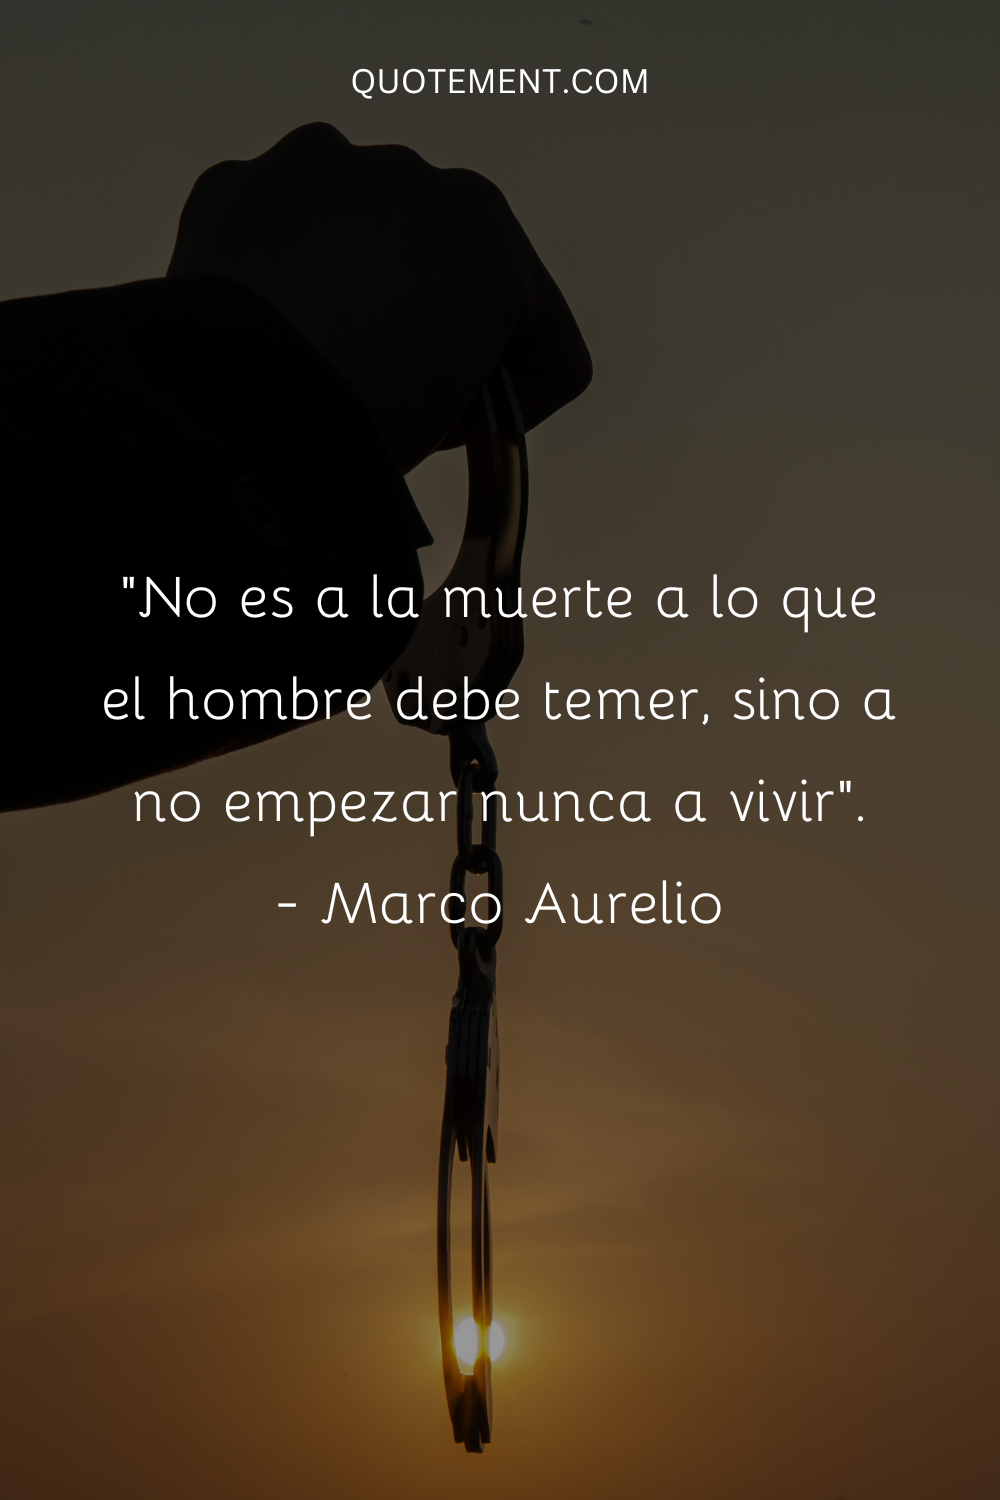 "No es a la muerte a lo que el hombre debe temer, sino a no empezar nunca a vivir". - Marco Aurelio